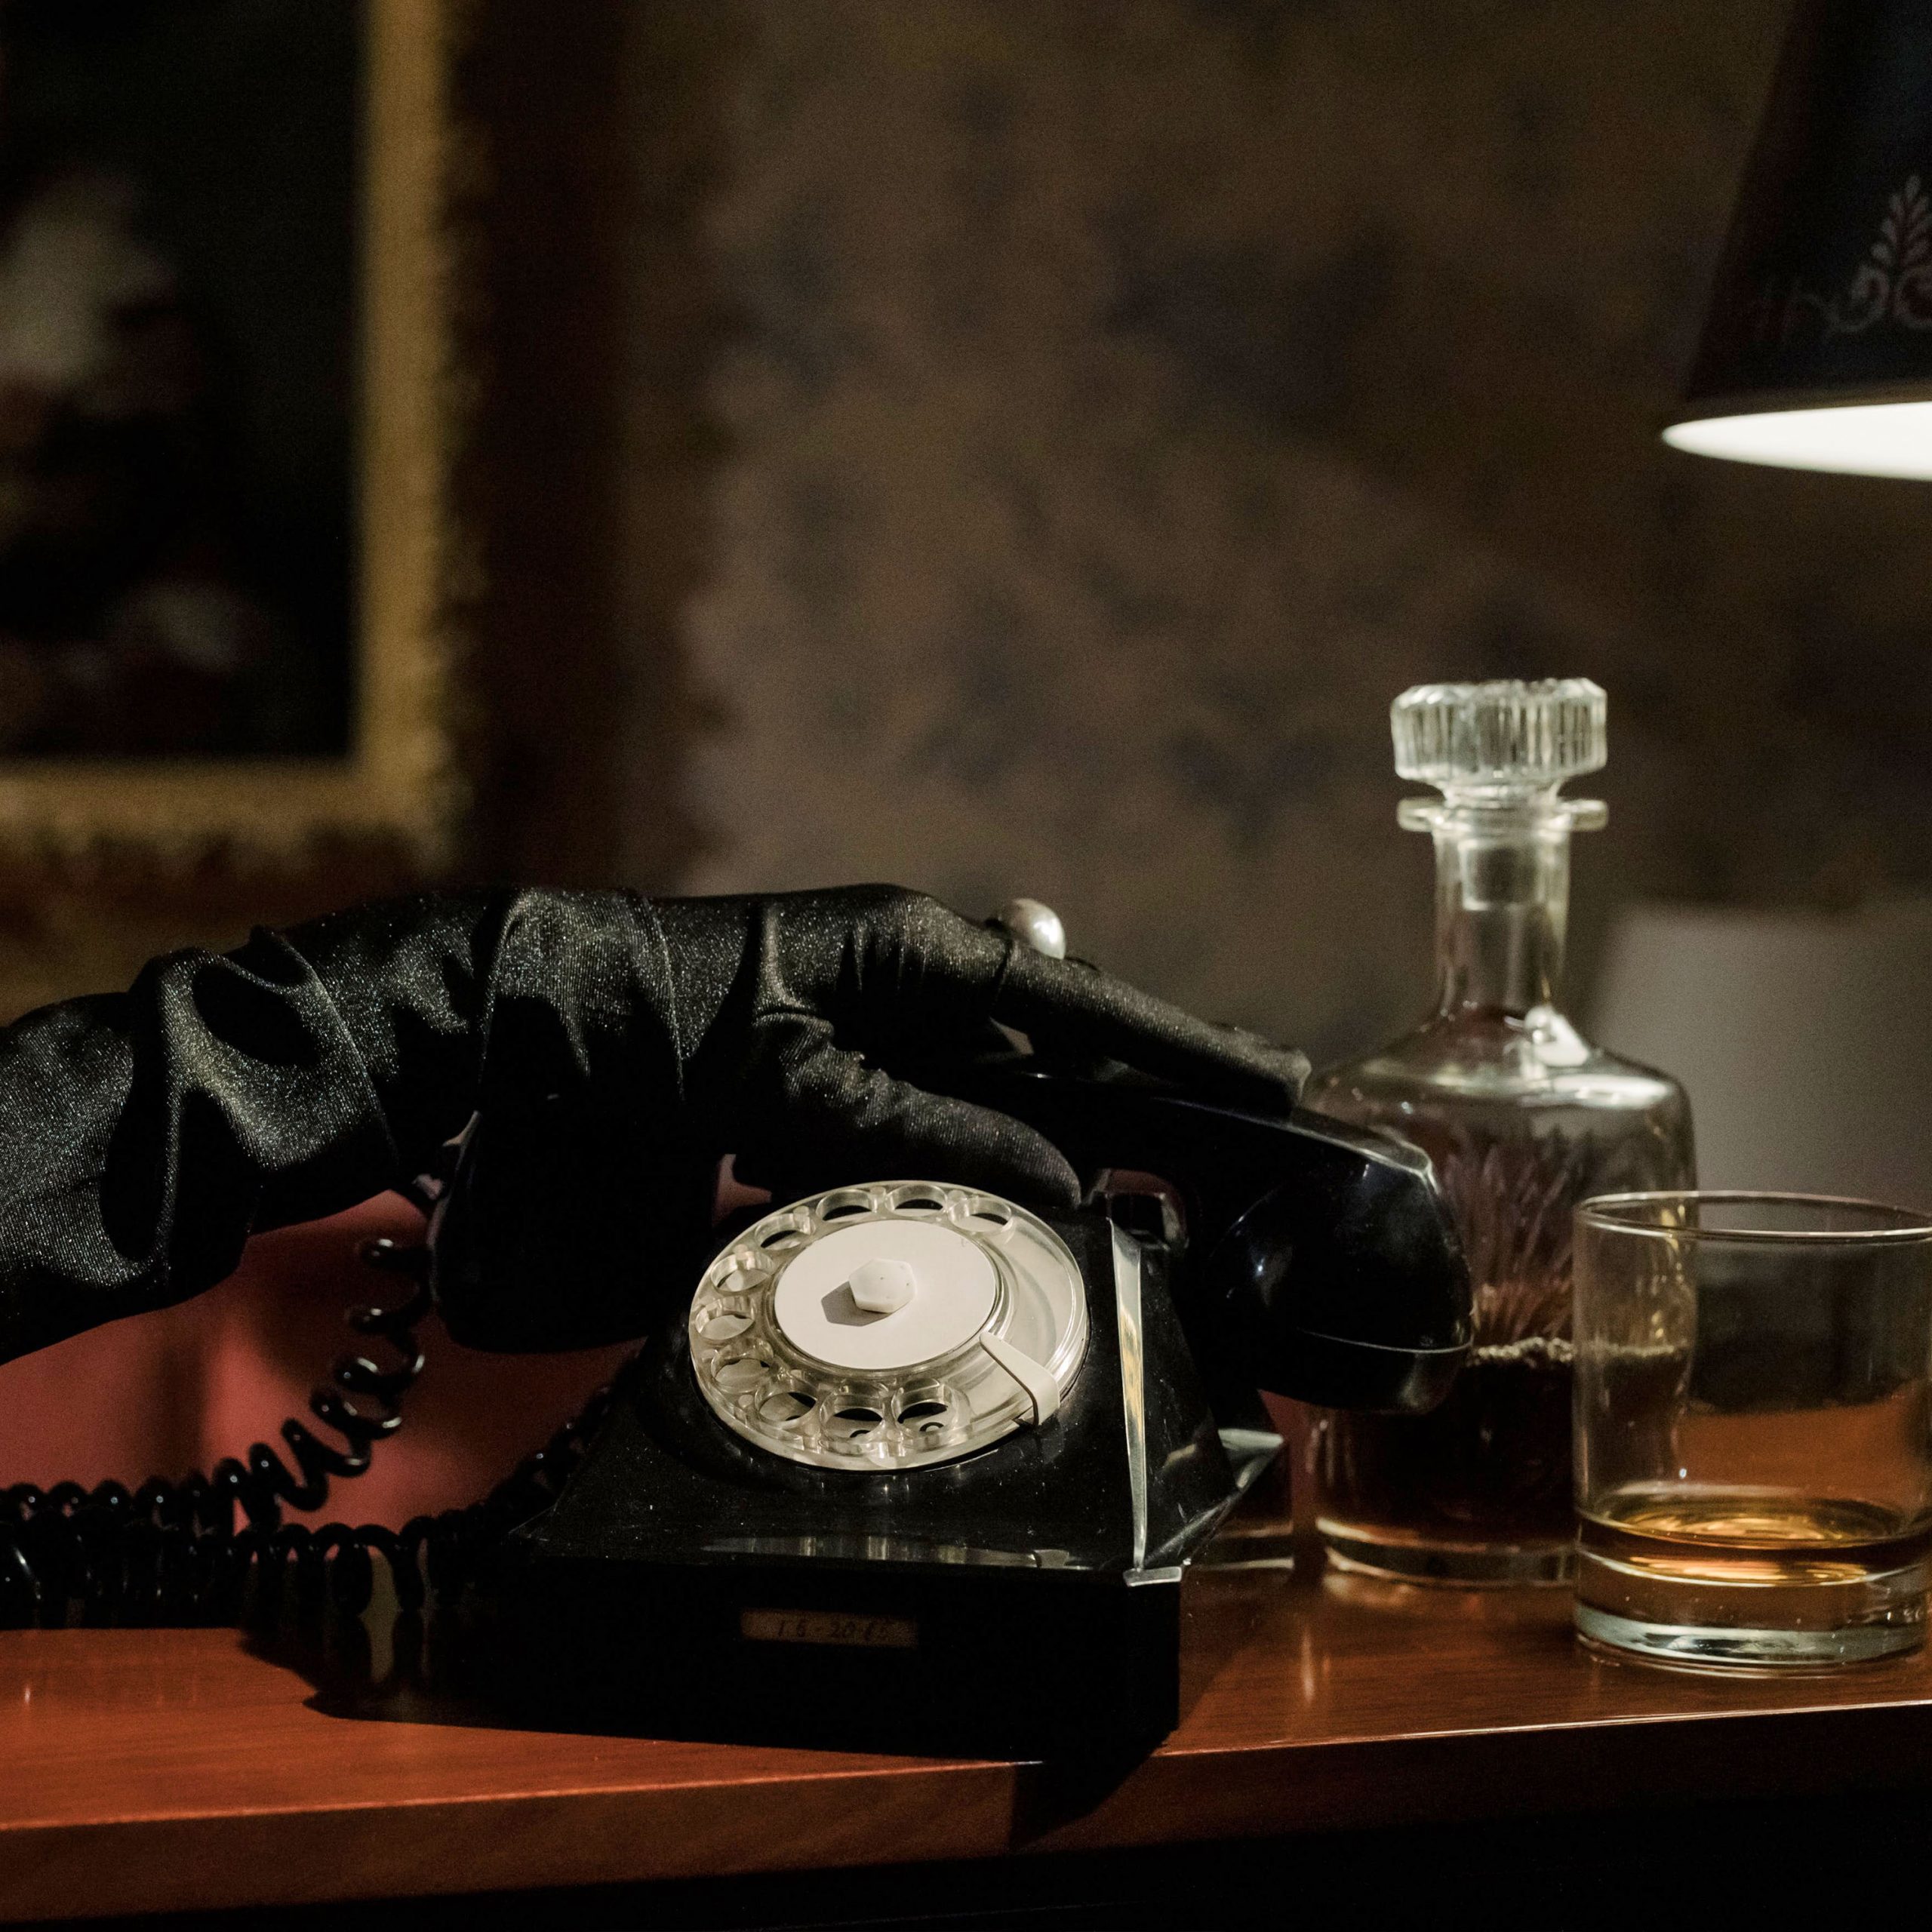 Closeup eines altmodischen Telefons und eine Hand, die zum Hörer greift, welche schwarze Seidenhandschuhe trägt. Daneben ein Whiskeyglas und -flasche.